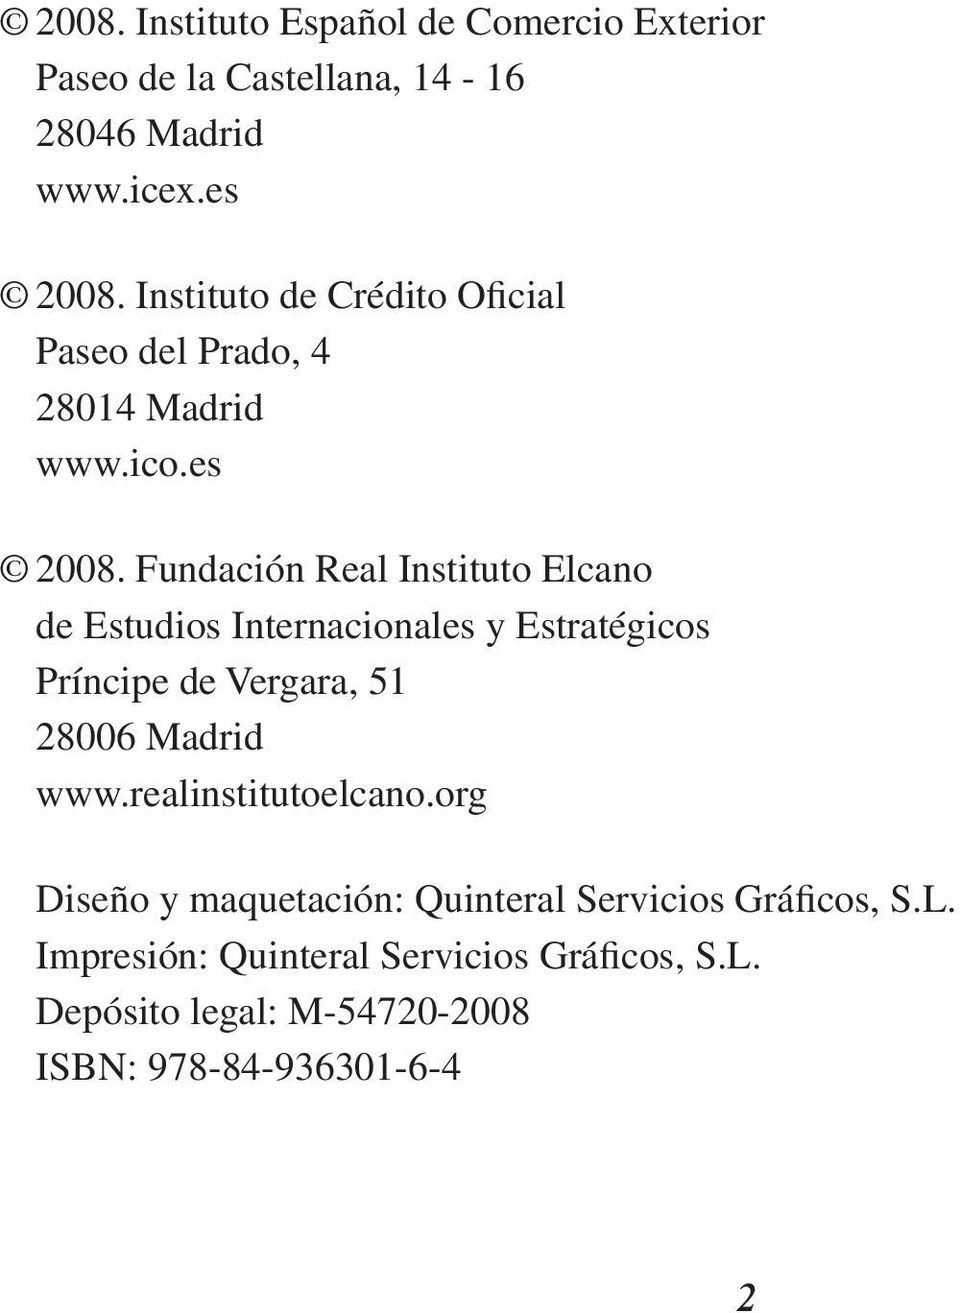 Fundación Real Instituto Elcano de Estudios Internacionales y Estratégicos Príncipe de Vergara, 51 28006 Madrid www.